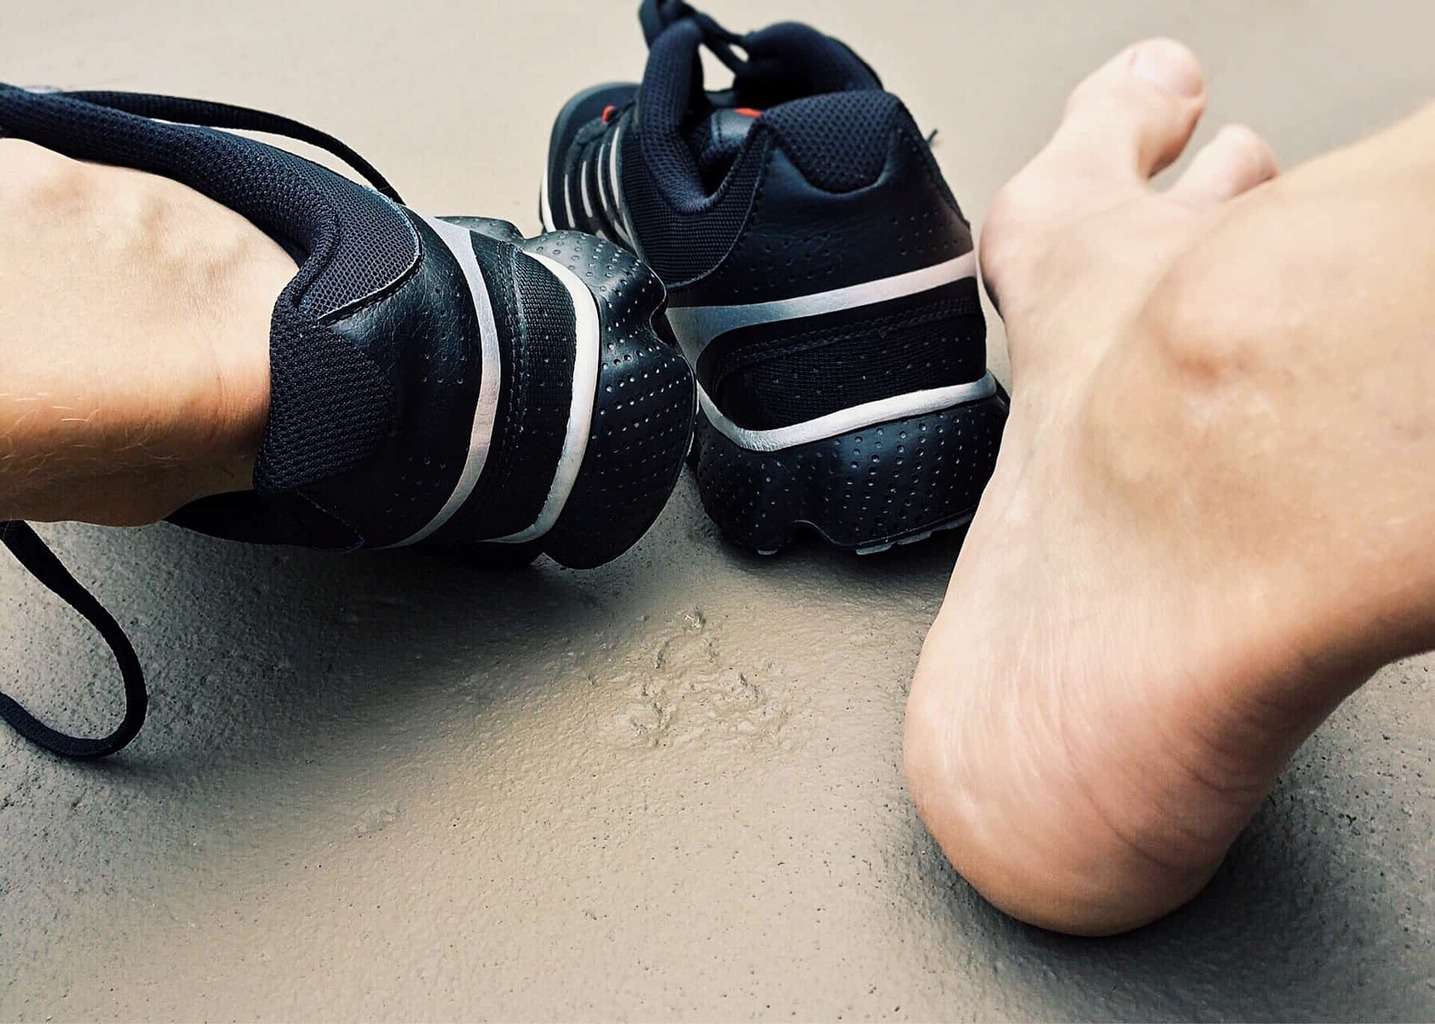 Sport: come evitare lesioni con la scarpa giusta